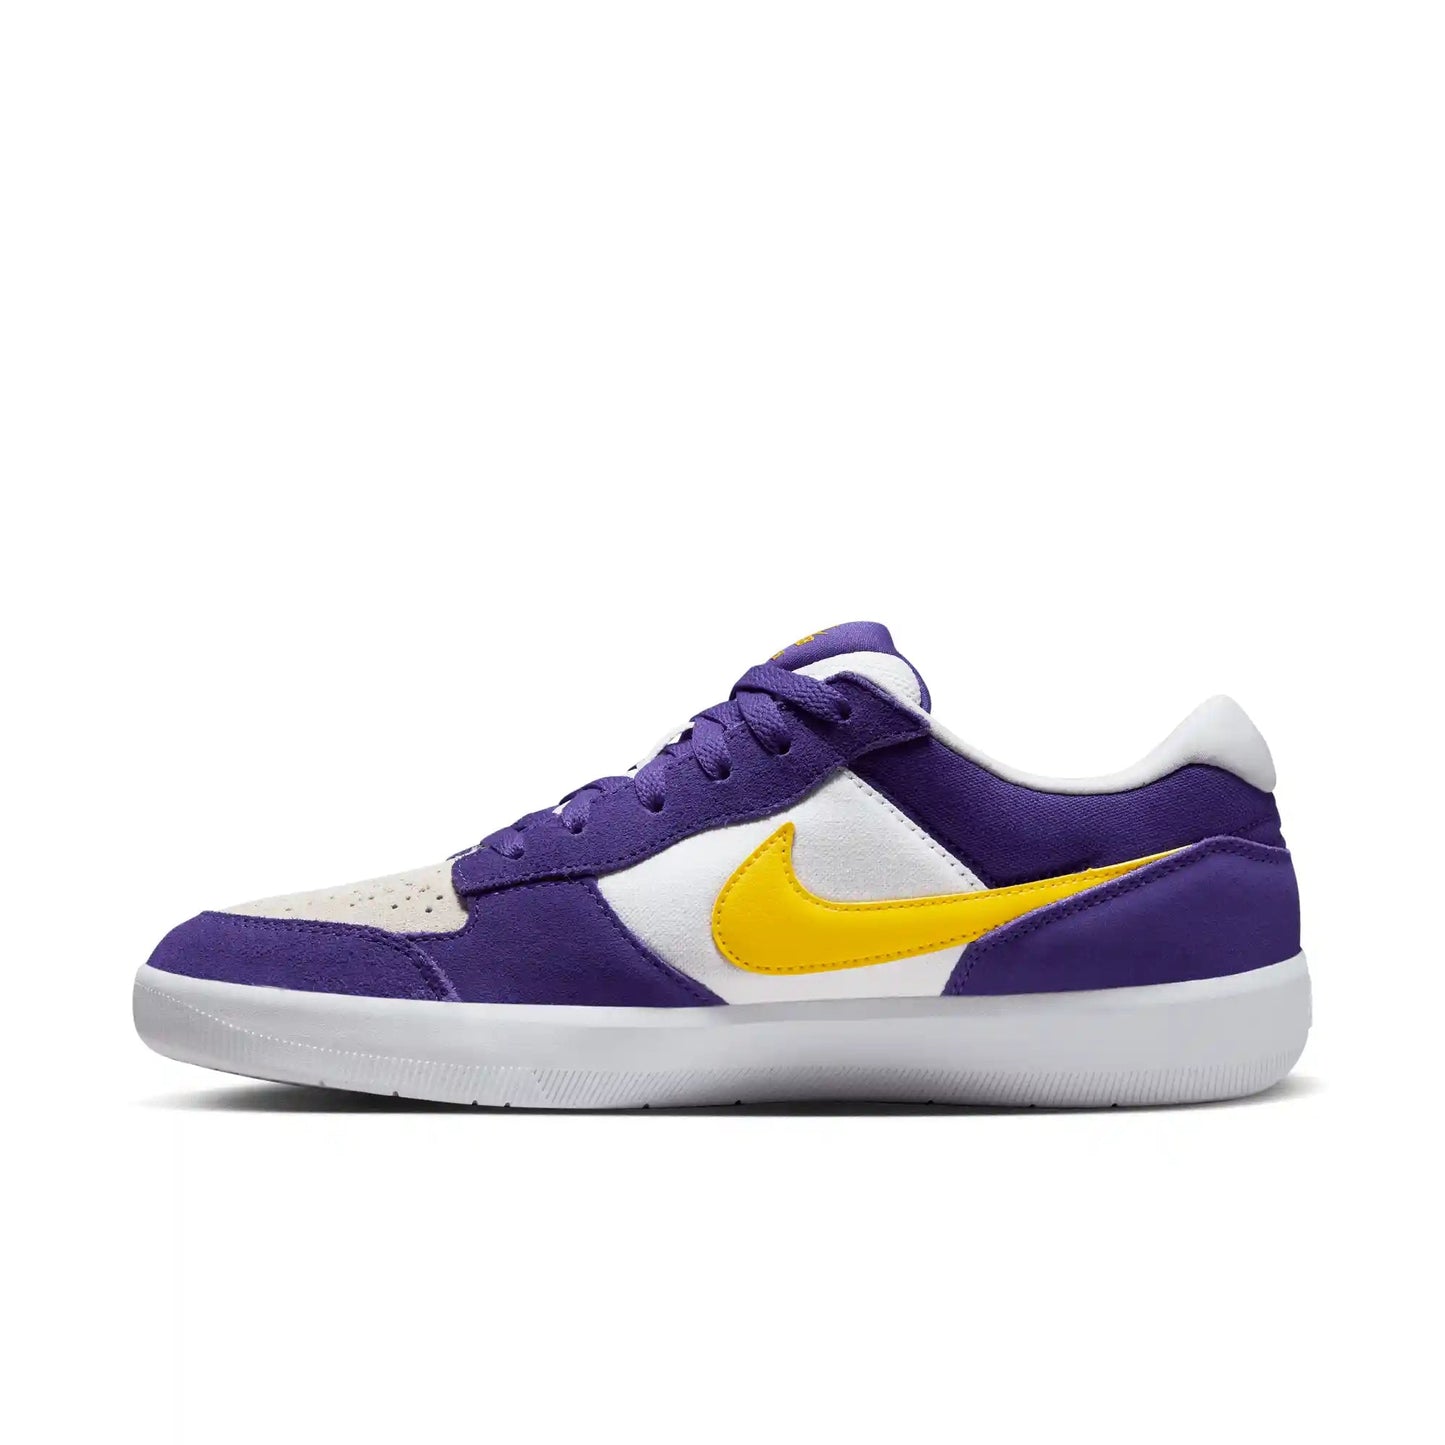 Nike SB Force 58, court purple/amarillo-white-white - Tiki Room Skateboards - 9